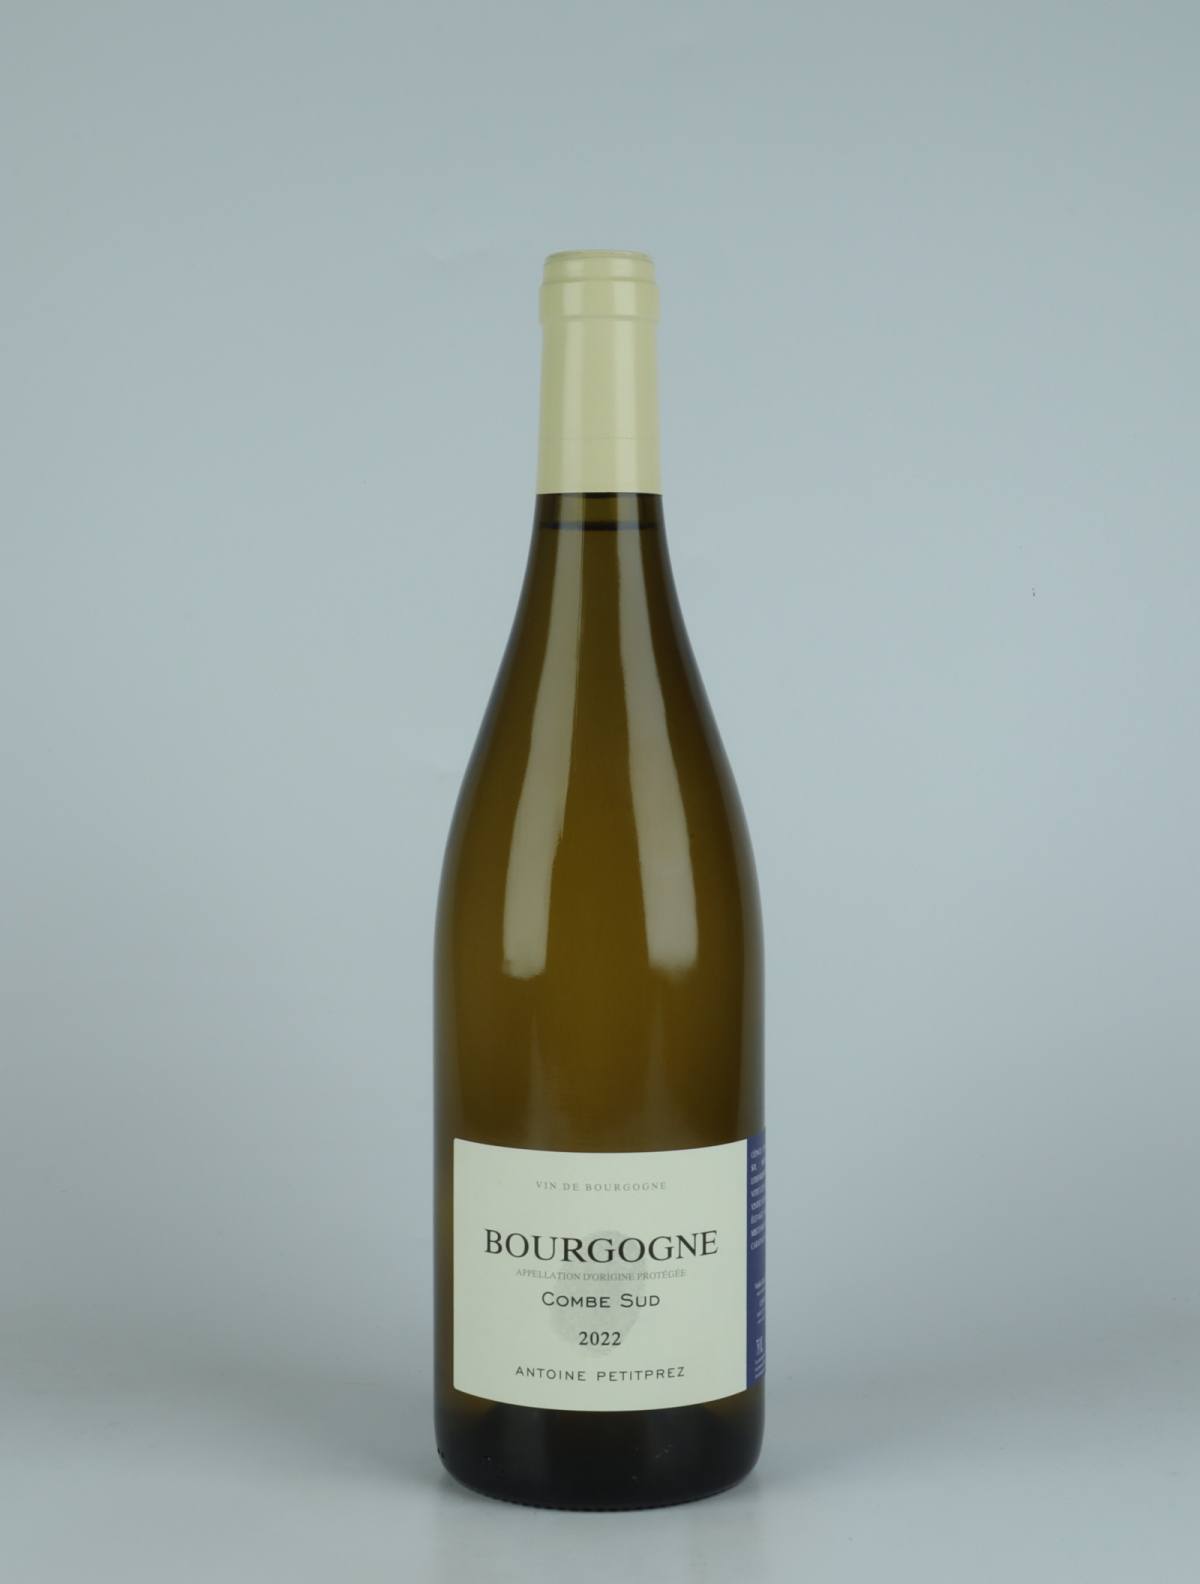 A bottle 2022 Bourgogne Blanc - Combe Sud White wine from Antoine Petitprez, Burgundy in France